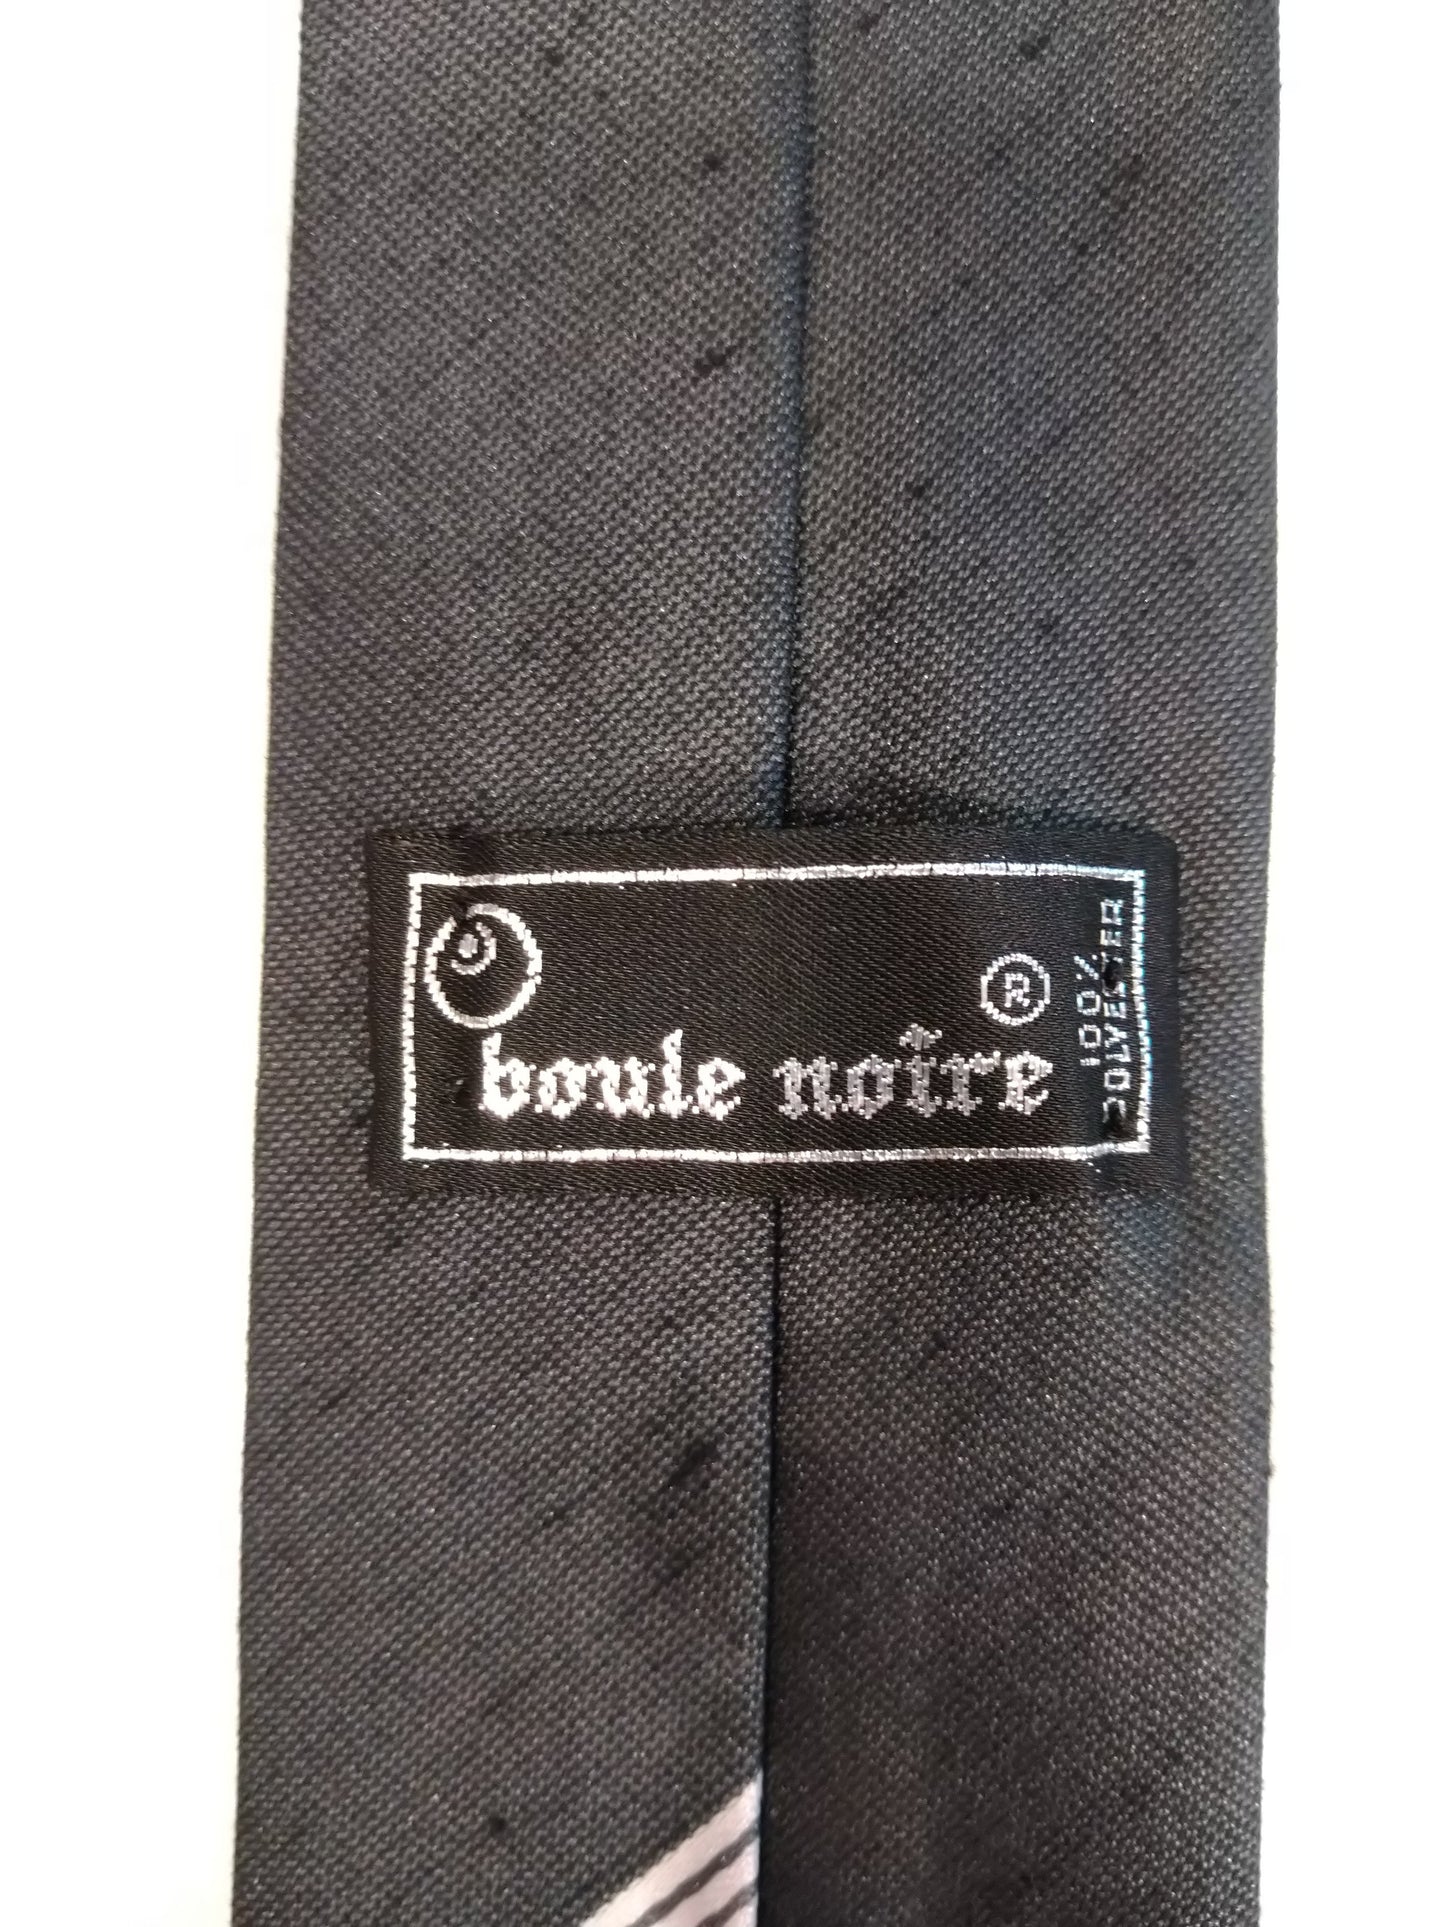 Boule Noire Vintage à cravate en polyester étroite. Motif à rayures en argent noir.